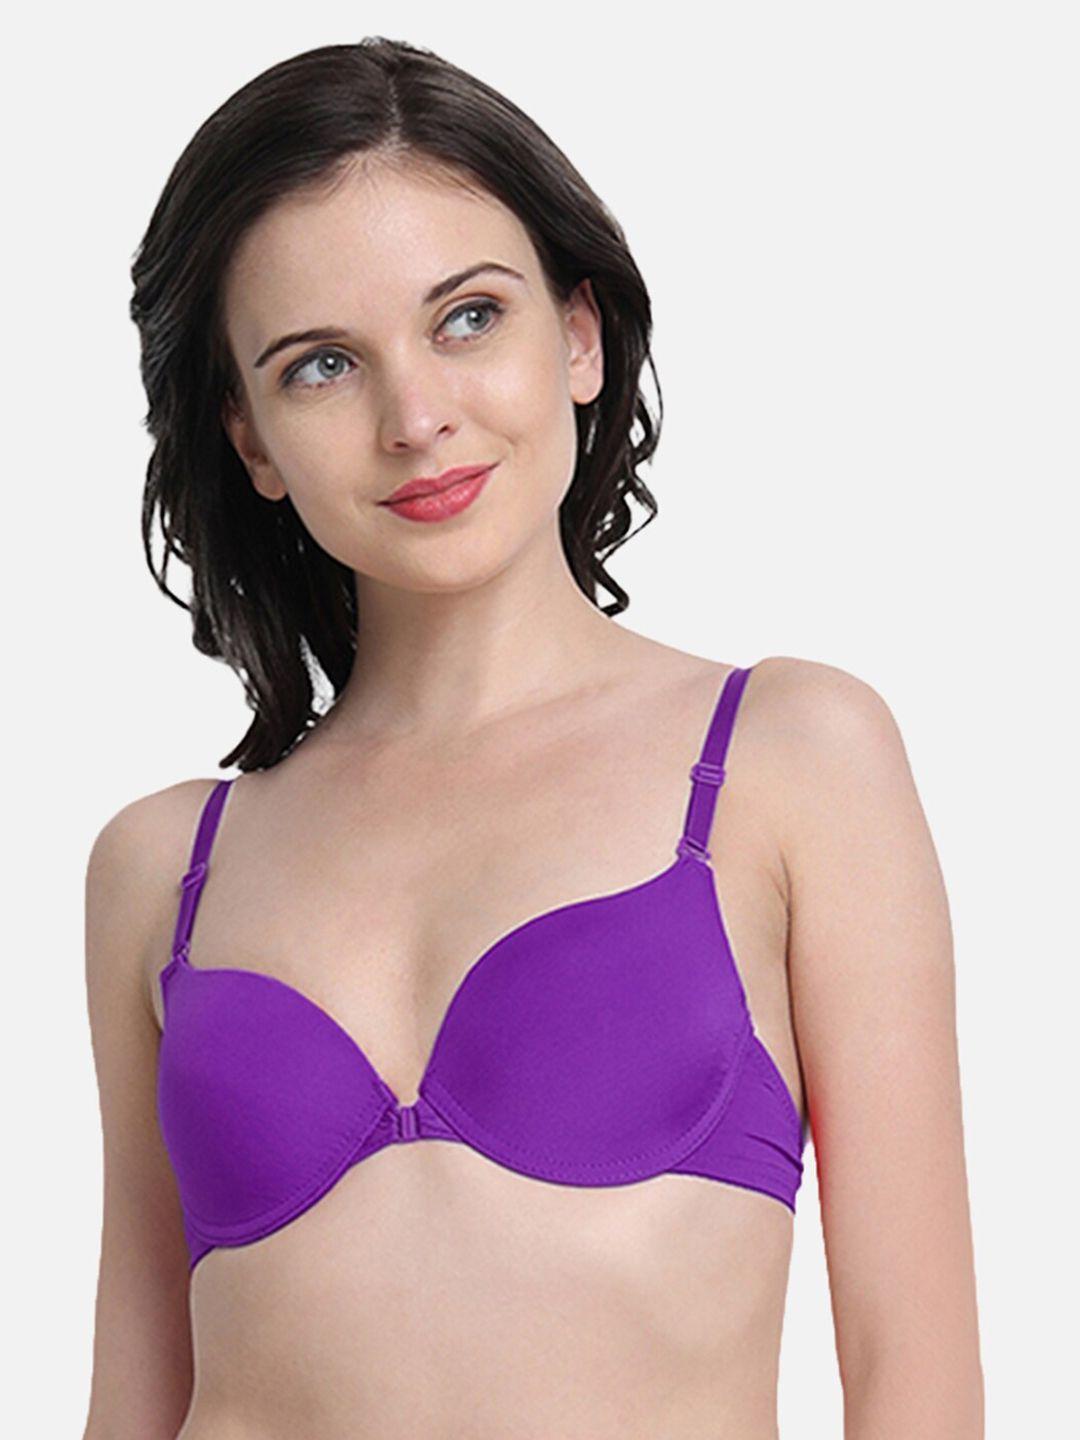 spiaty women purple bra